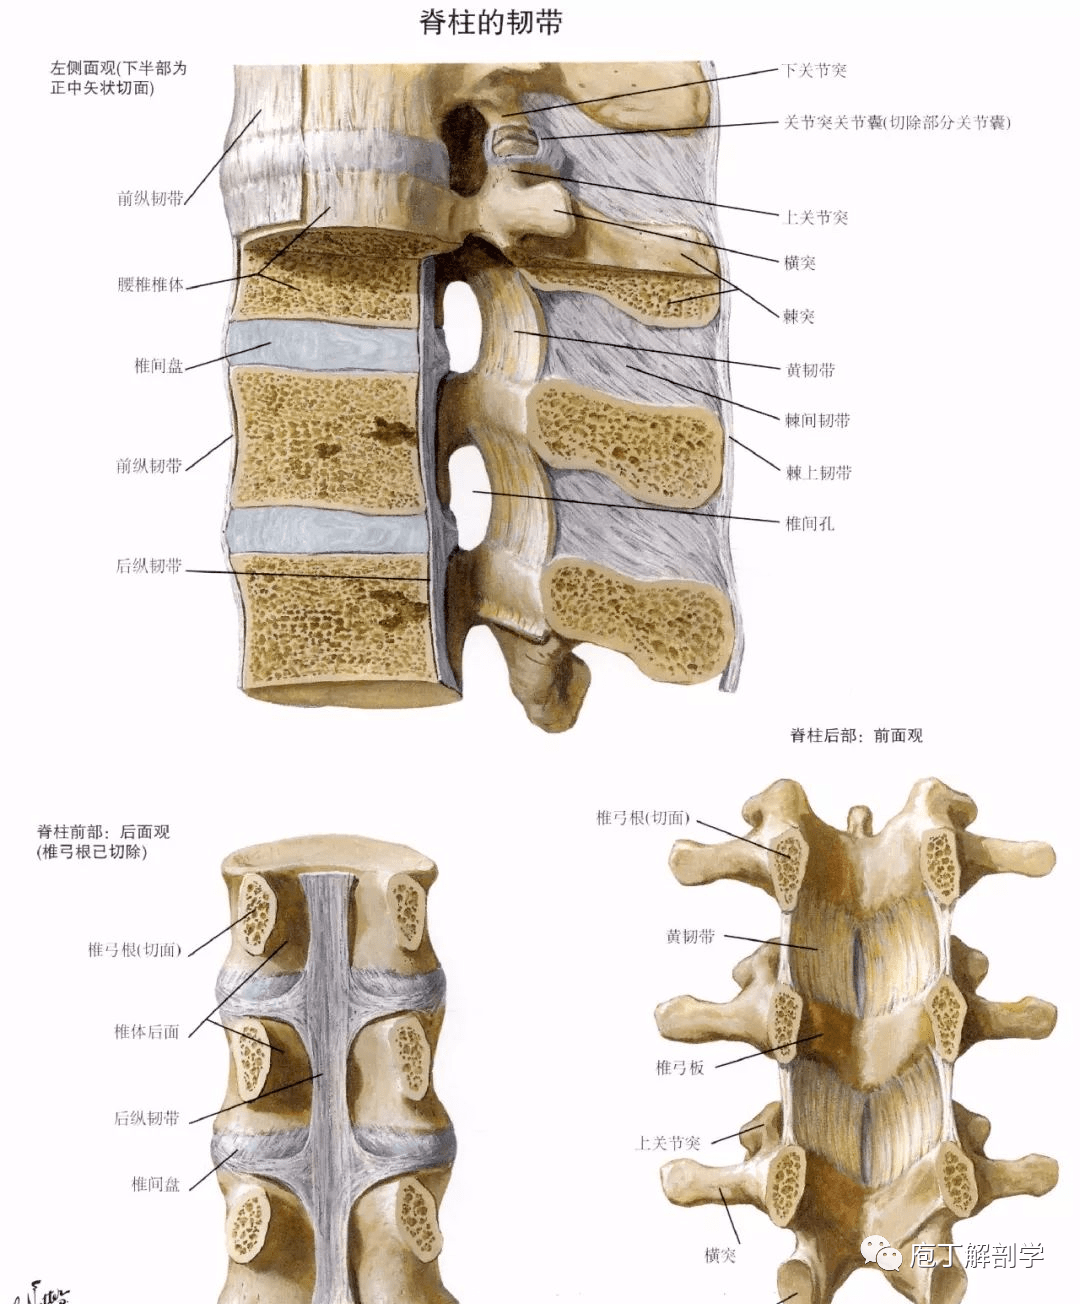 横突间韧带:相邻横突之间黄韧带:椎管内(后壁,相邻椎弓之间棘间韧带